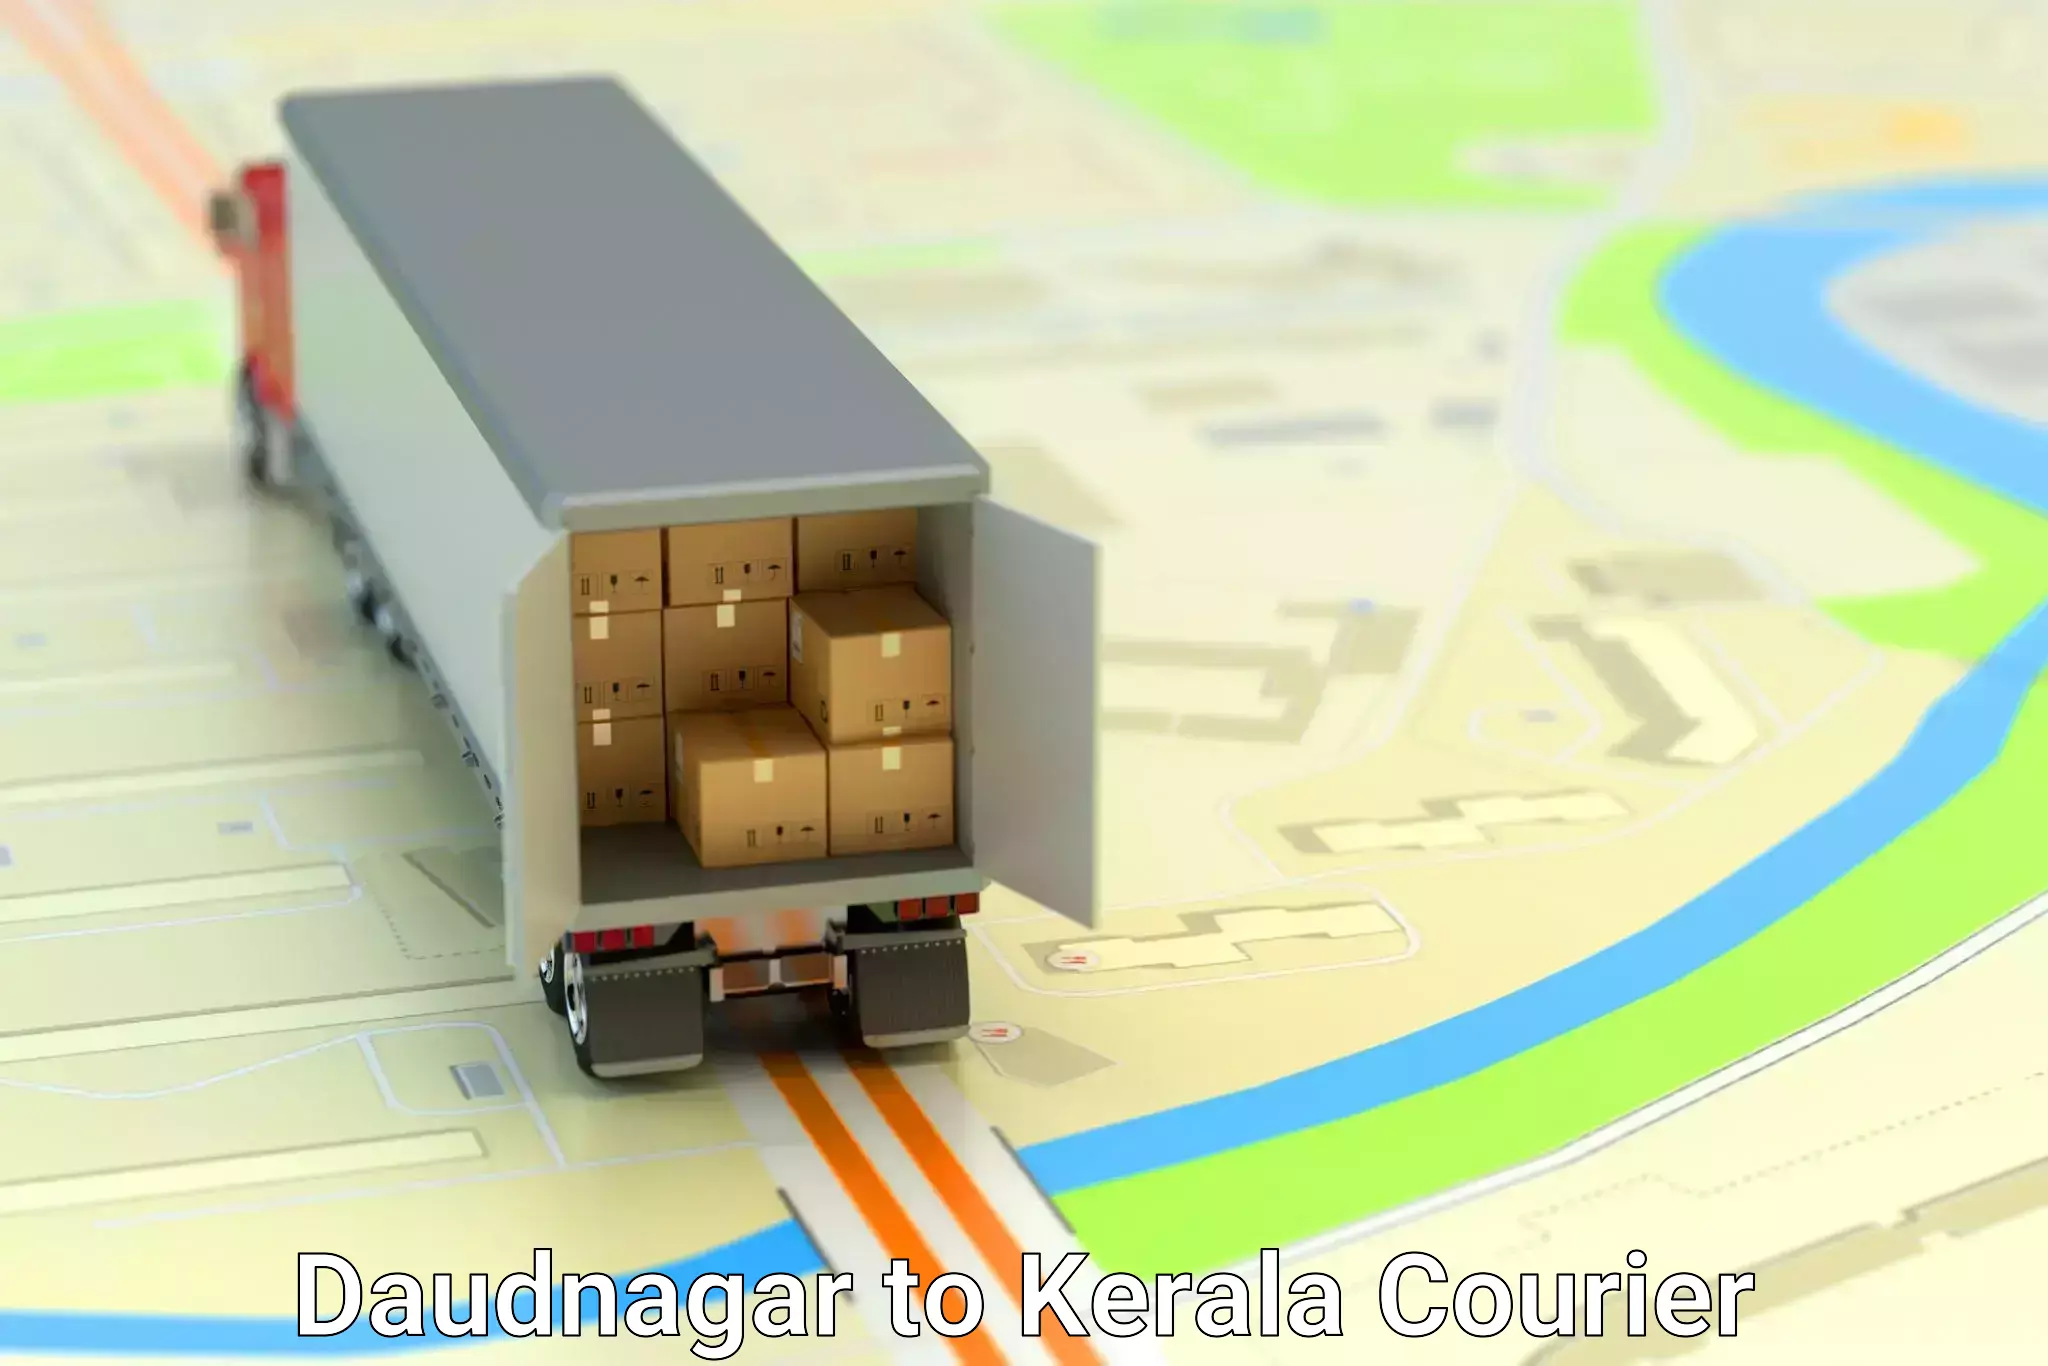 Home goods moving company Daudnagar to Kochi